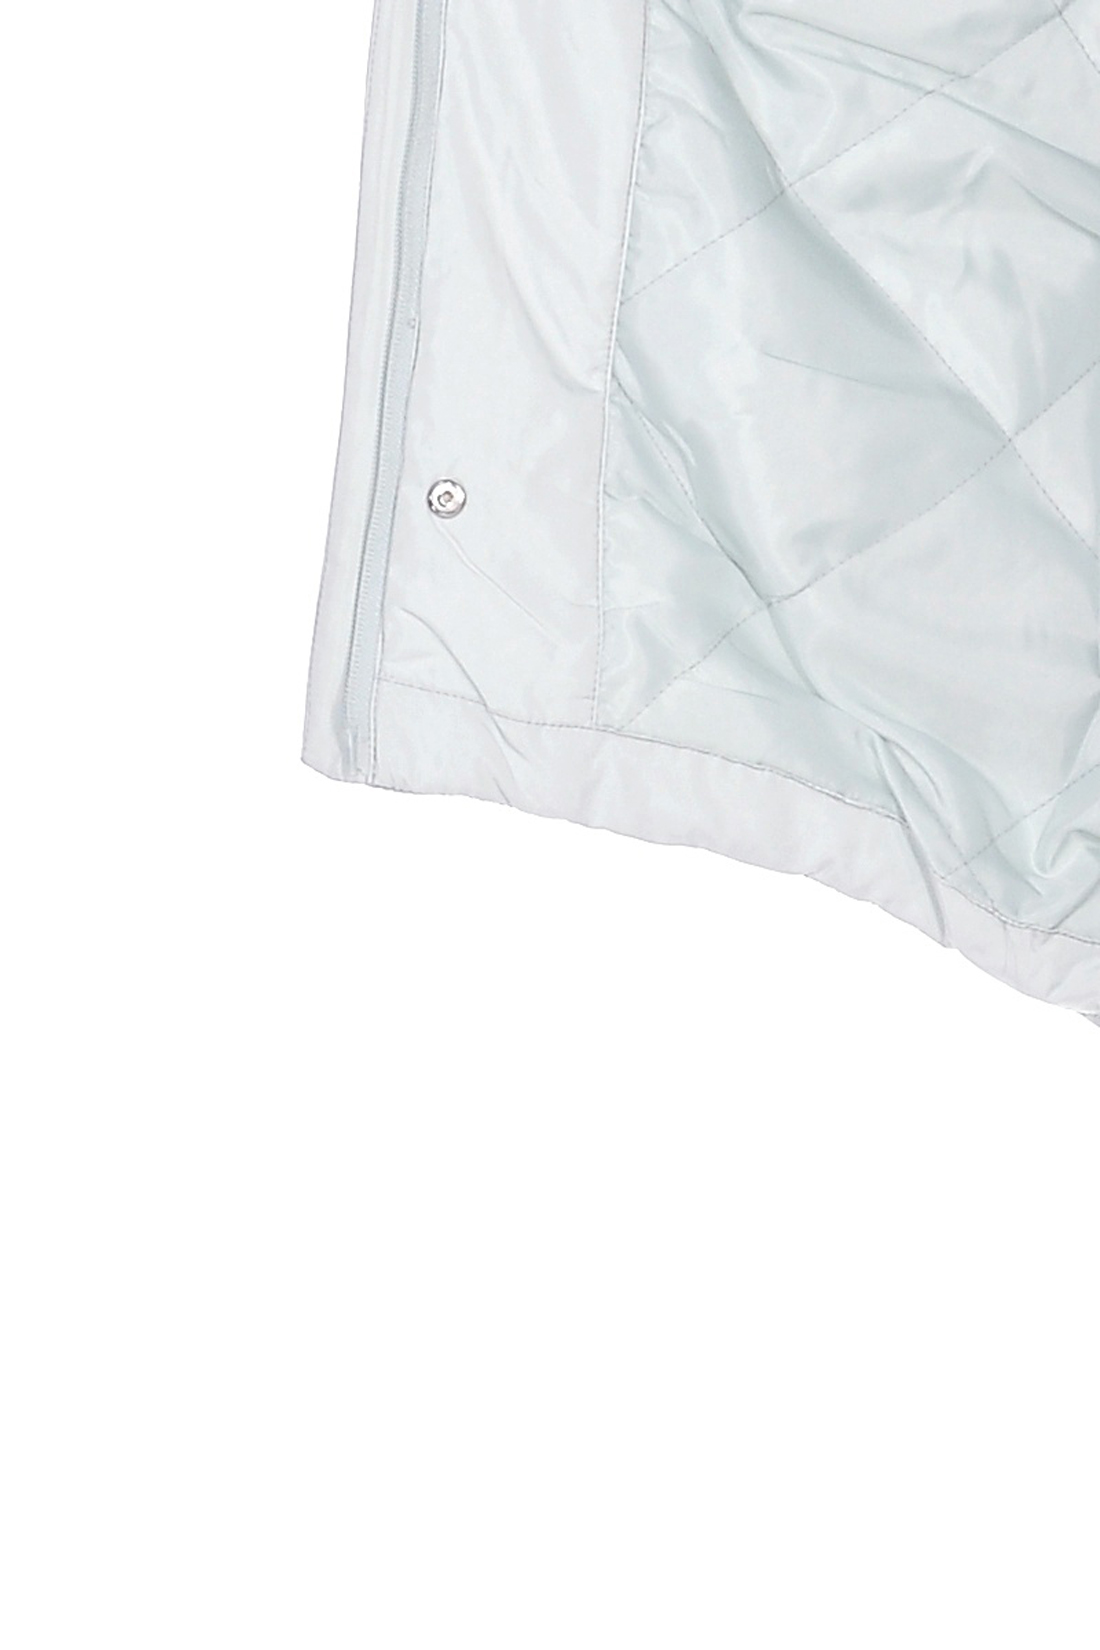 Куртка-парка с длинной спинкой (арт. baon B039055), размер S, цвет зеленый Куртка-парка с длинной спинкой (арт. baon B039055) - фото 4